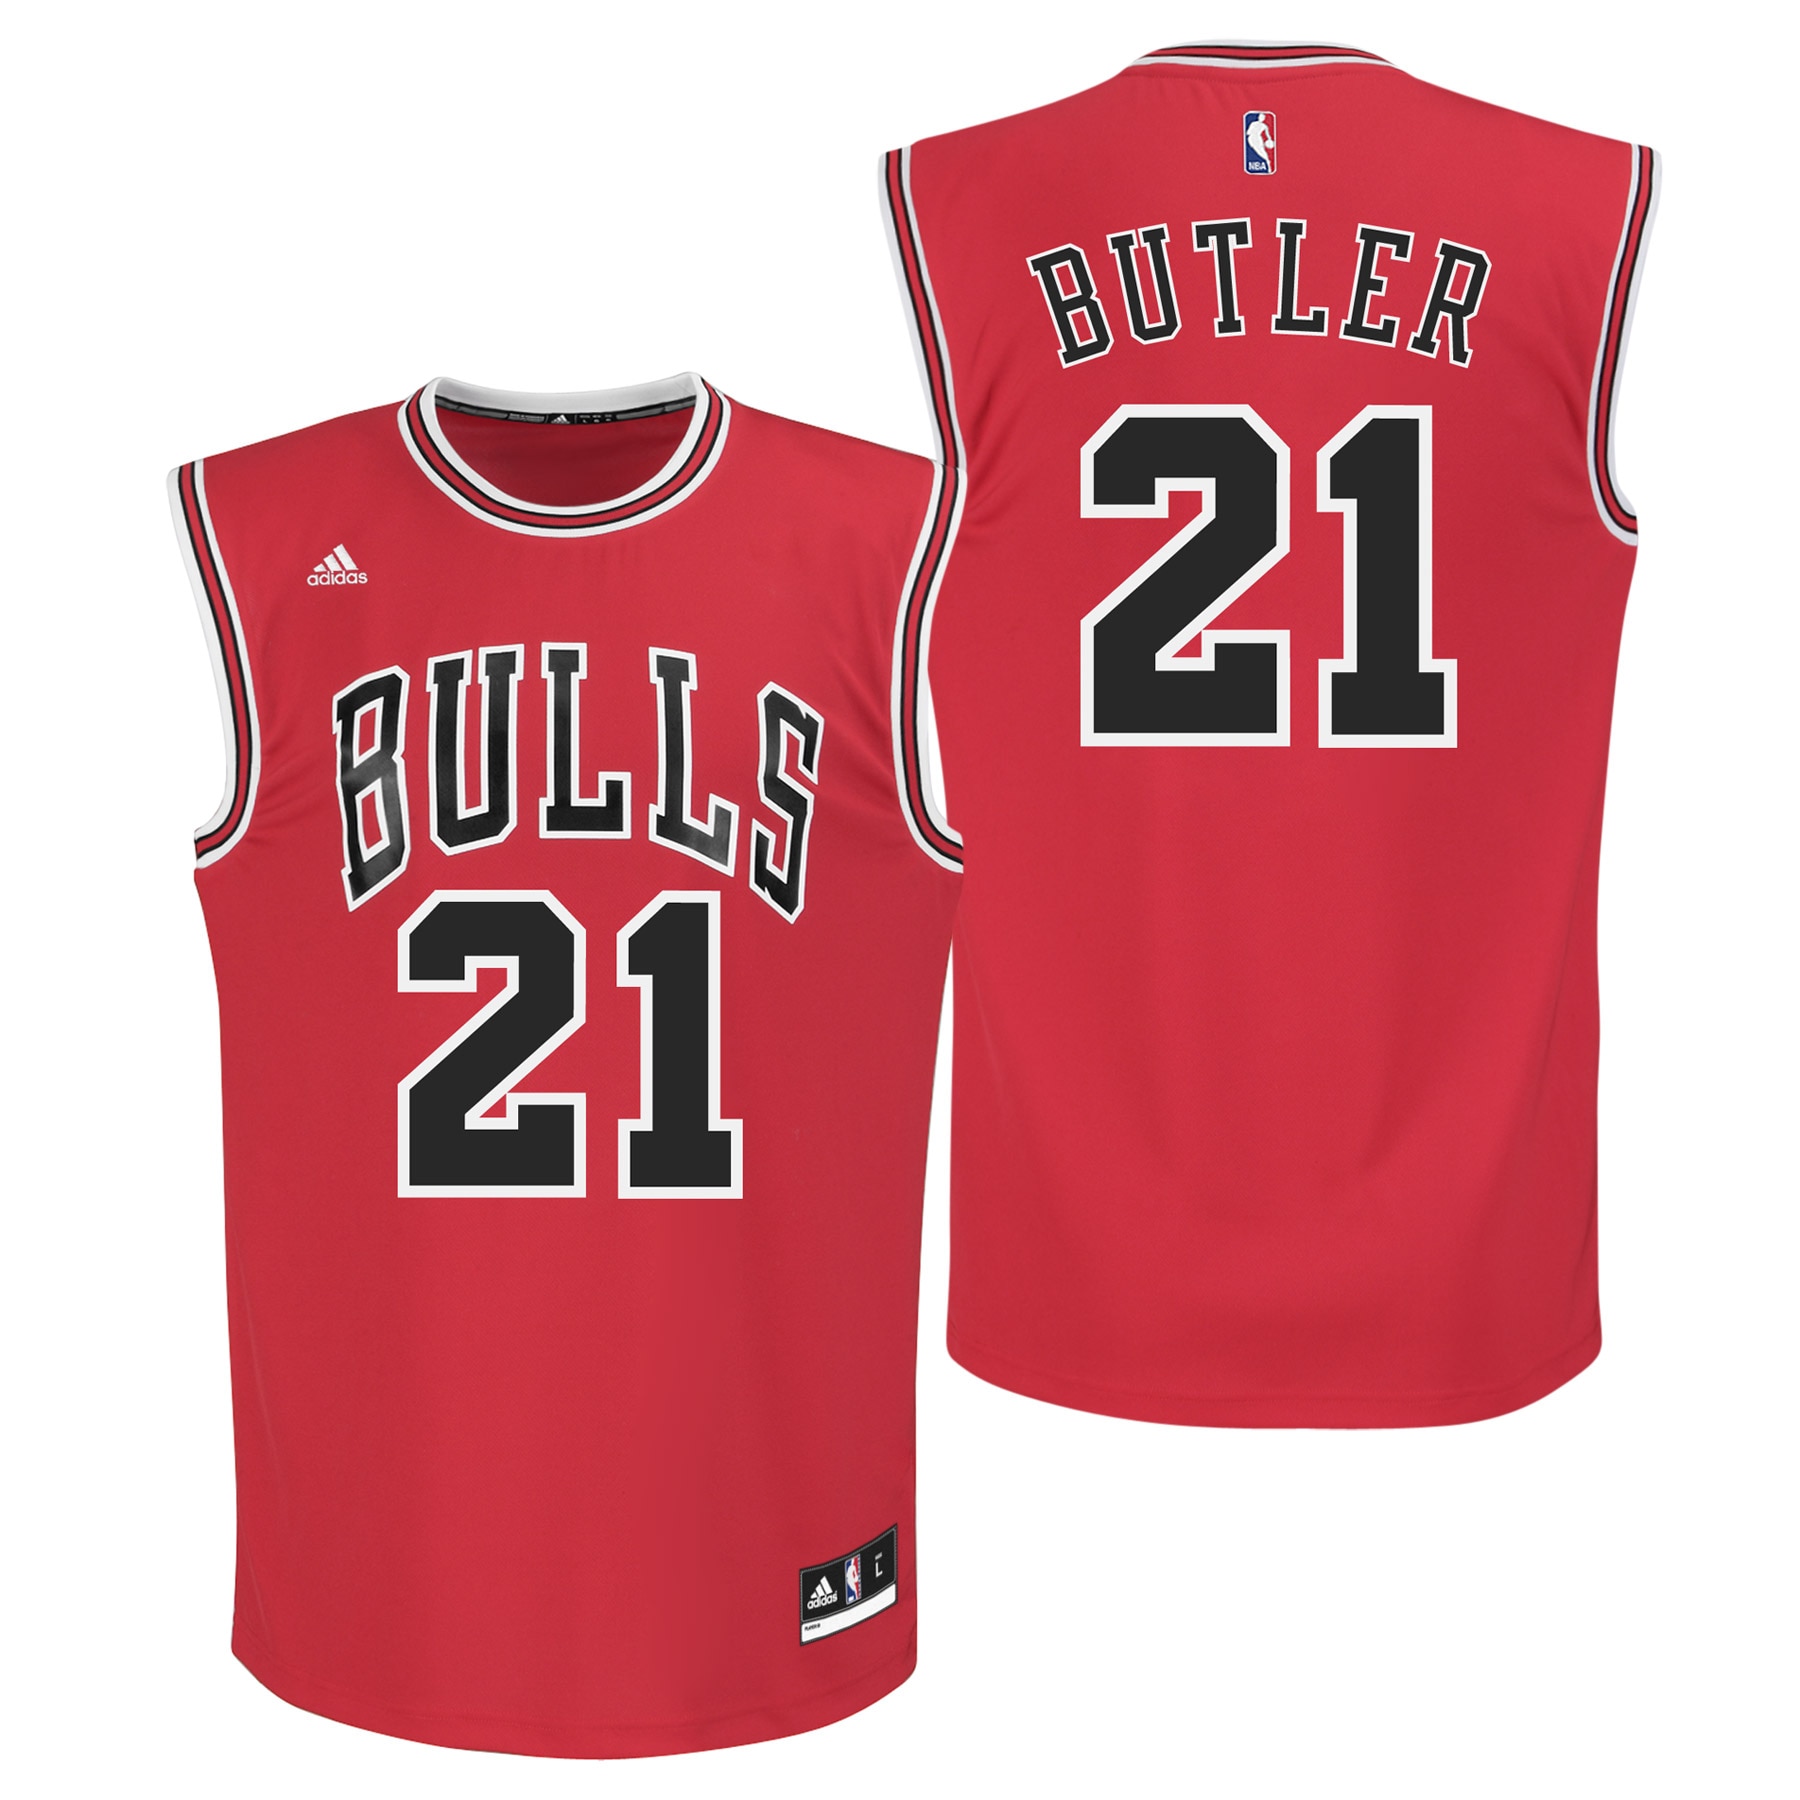 jimmy butler chicago bulls jersey